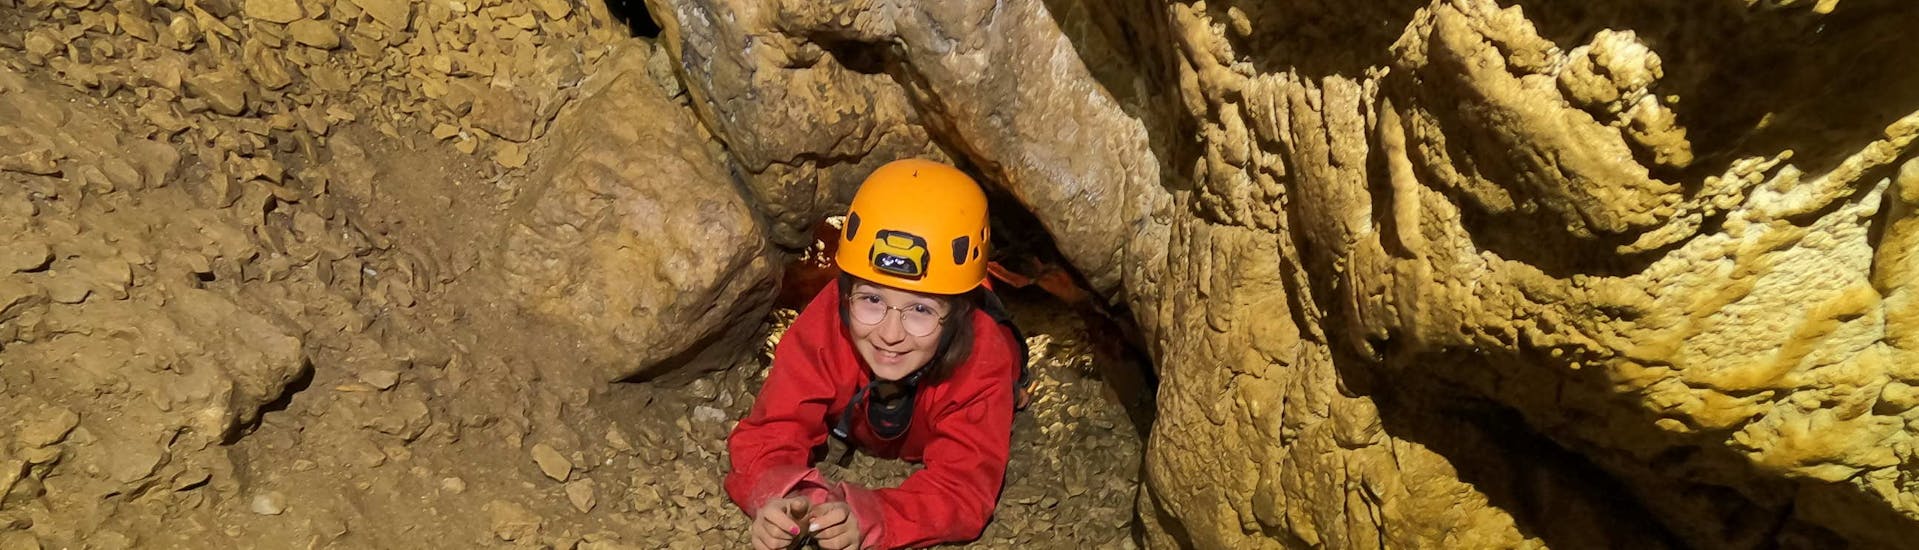 Alguien está progresando en una cueva durante su actividad de espeleología "discovery" en Les Deux Avens, con Geo Ardèche Canyon.